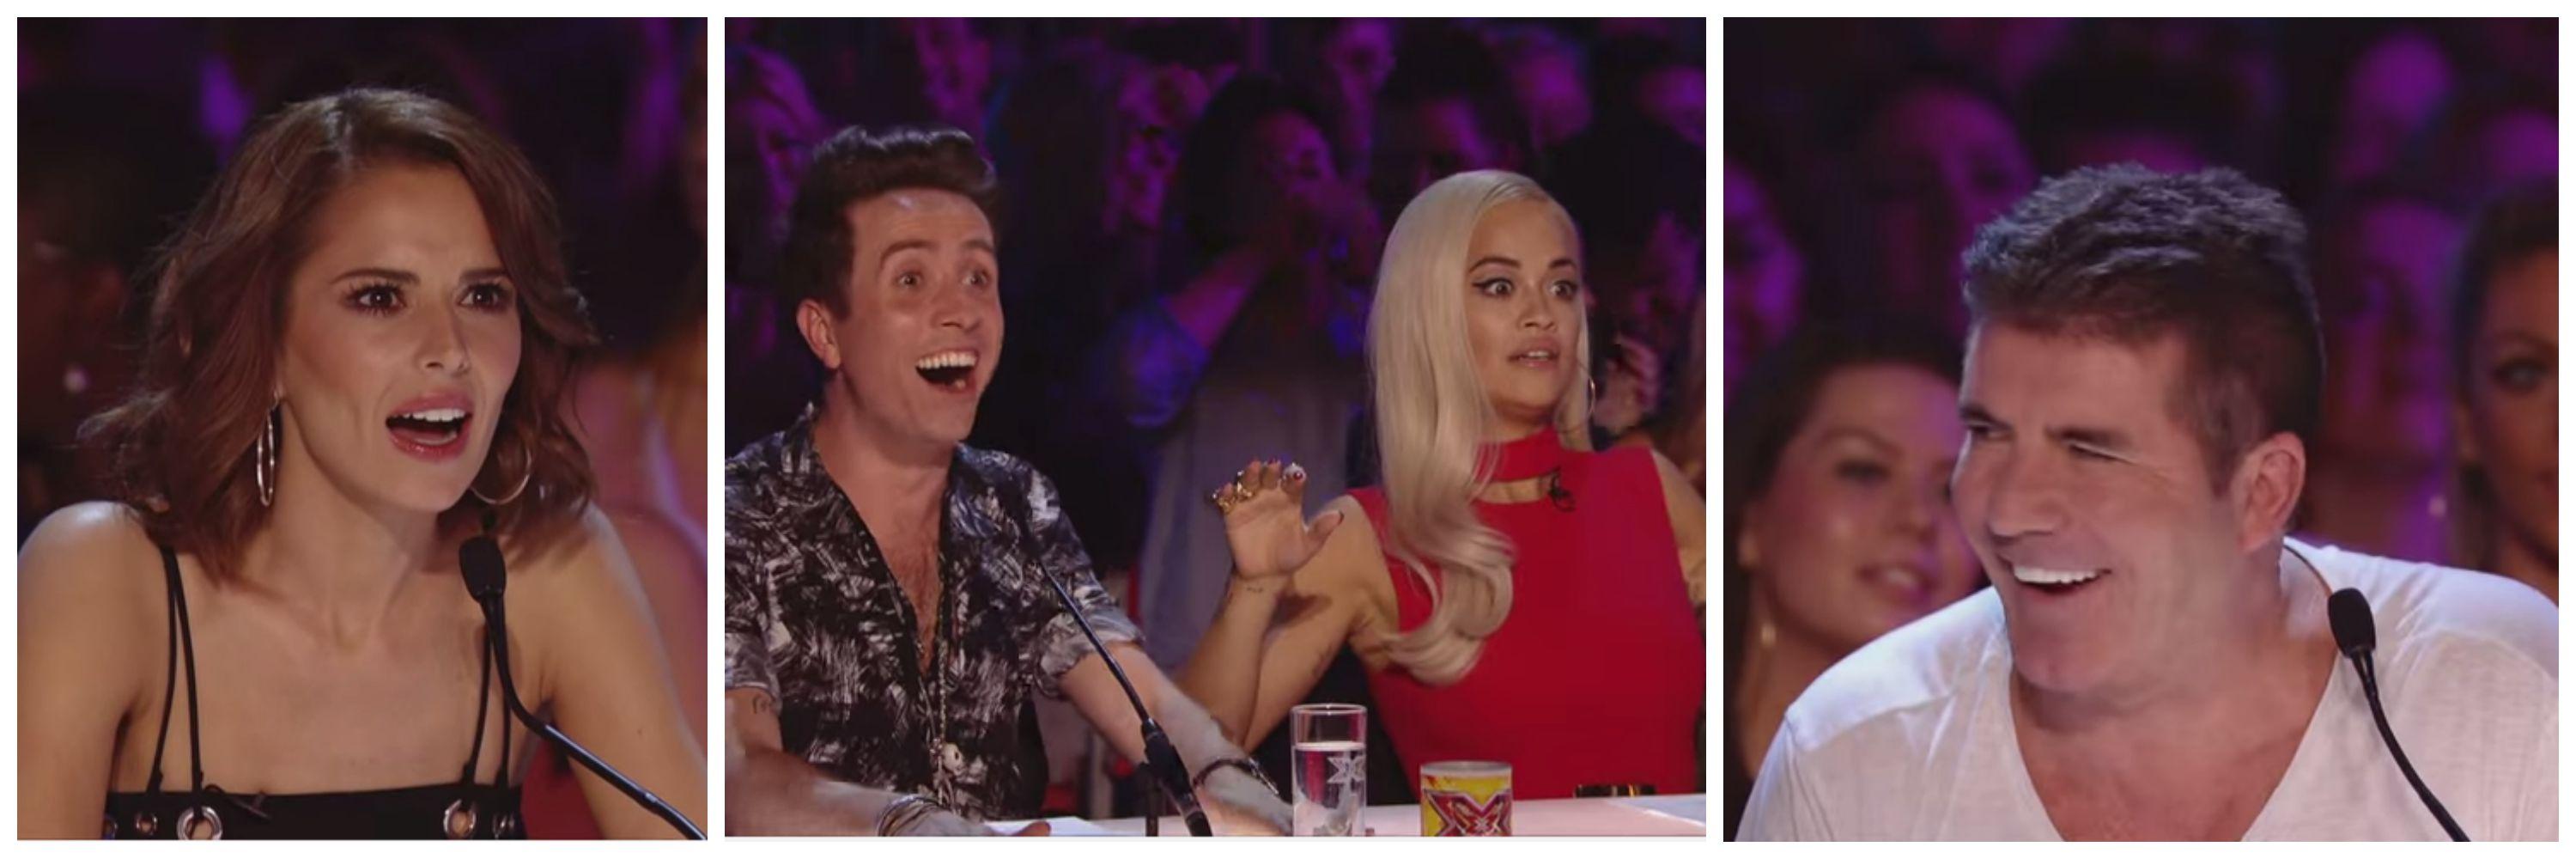 FĂRĂ INHIBIȚII la 60 de ani pe scena X Factor UK! TREBUIE să vezi momentul și fețele STUPEFIATE ale juraților